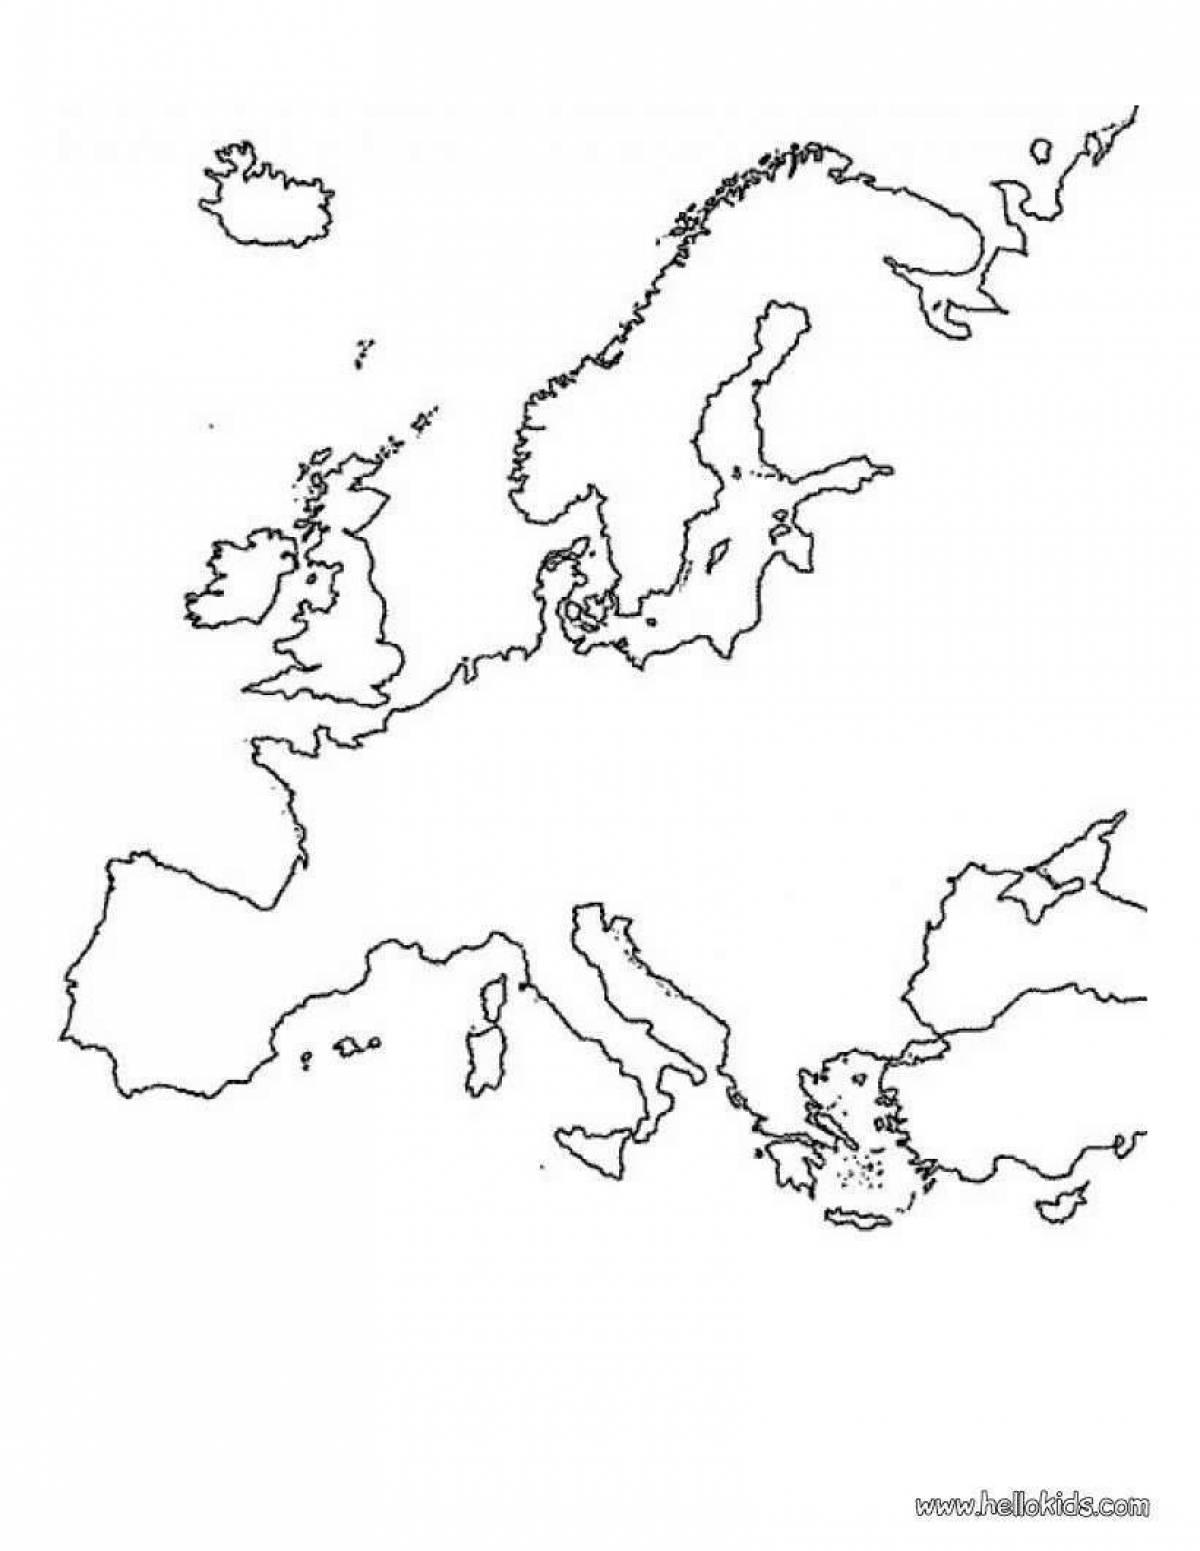 Разукрасить контурную карту. Контурная карта Европы без границ. Контурная карта Европа раскраска. Карта Европы пустая. Карта Европы разукрашка.